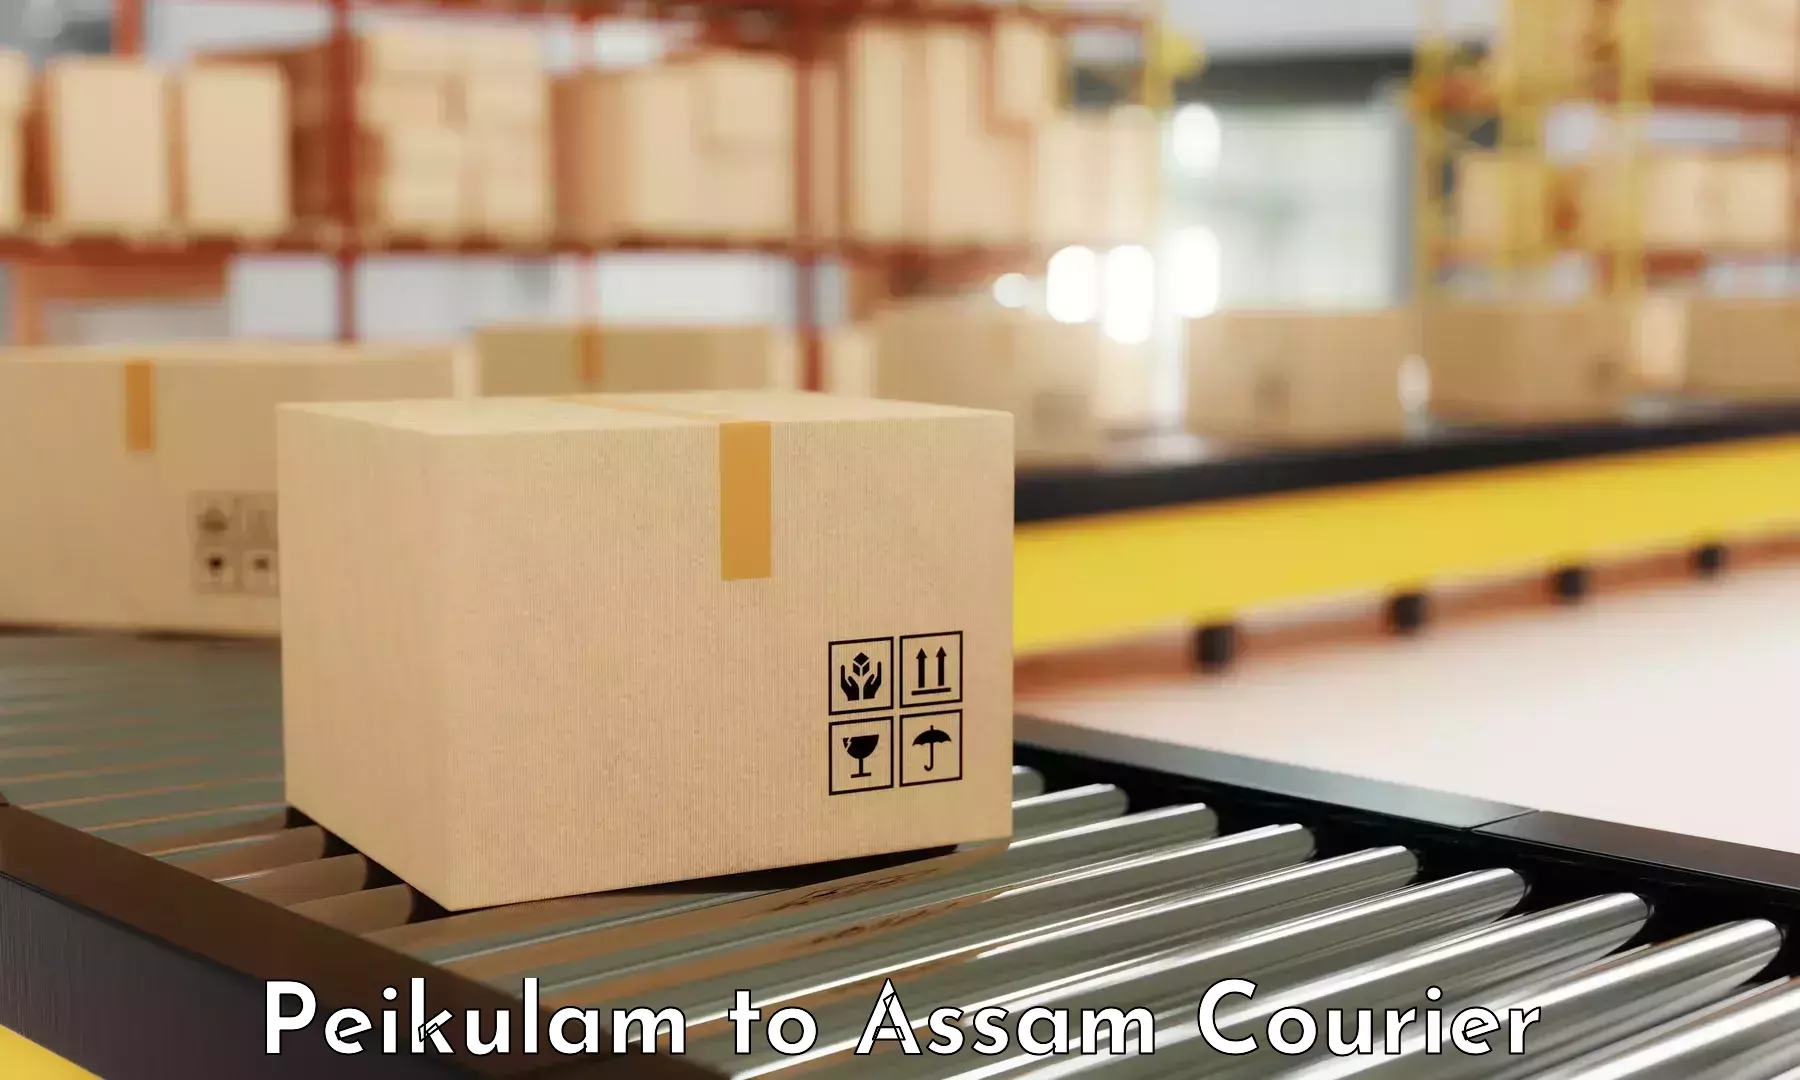 Efficient parcel service Peikulam to Dotma